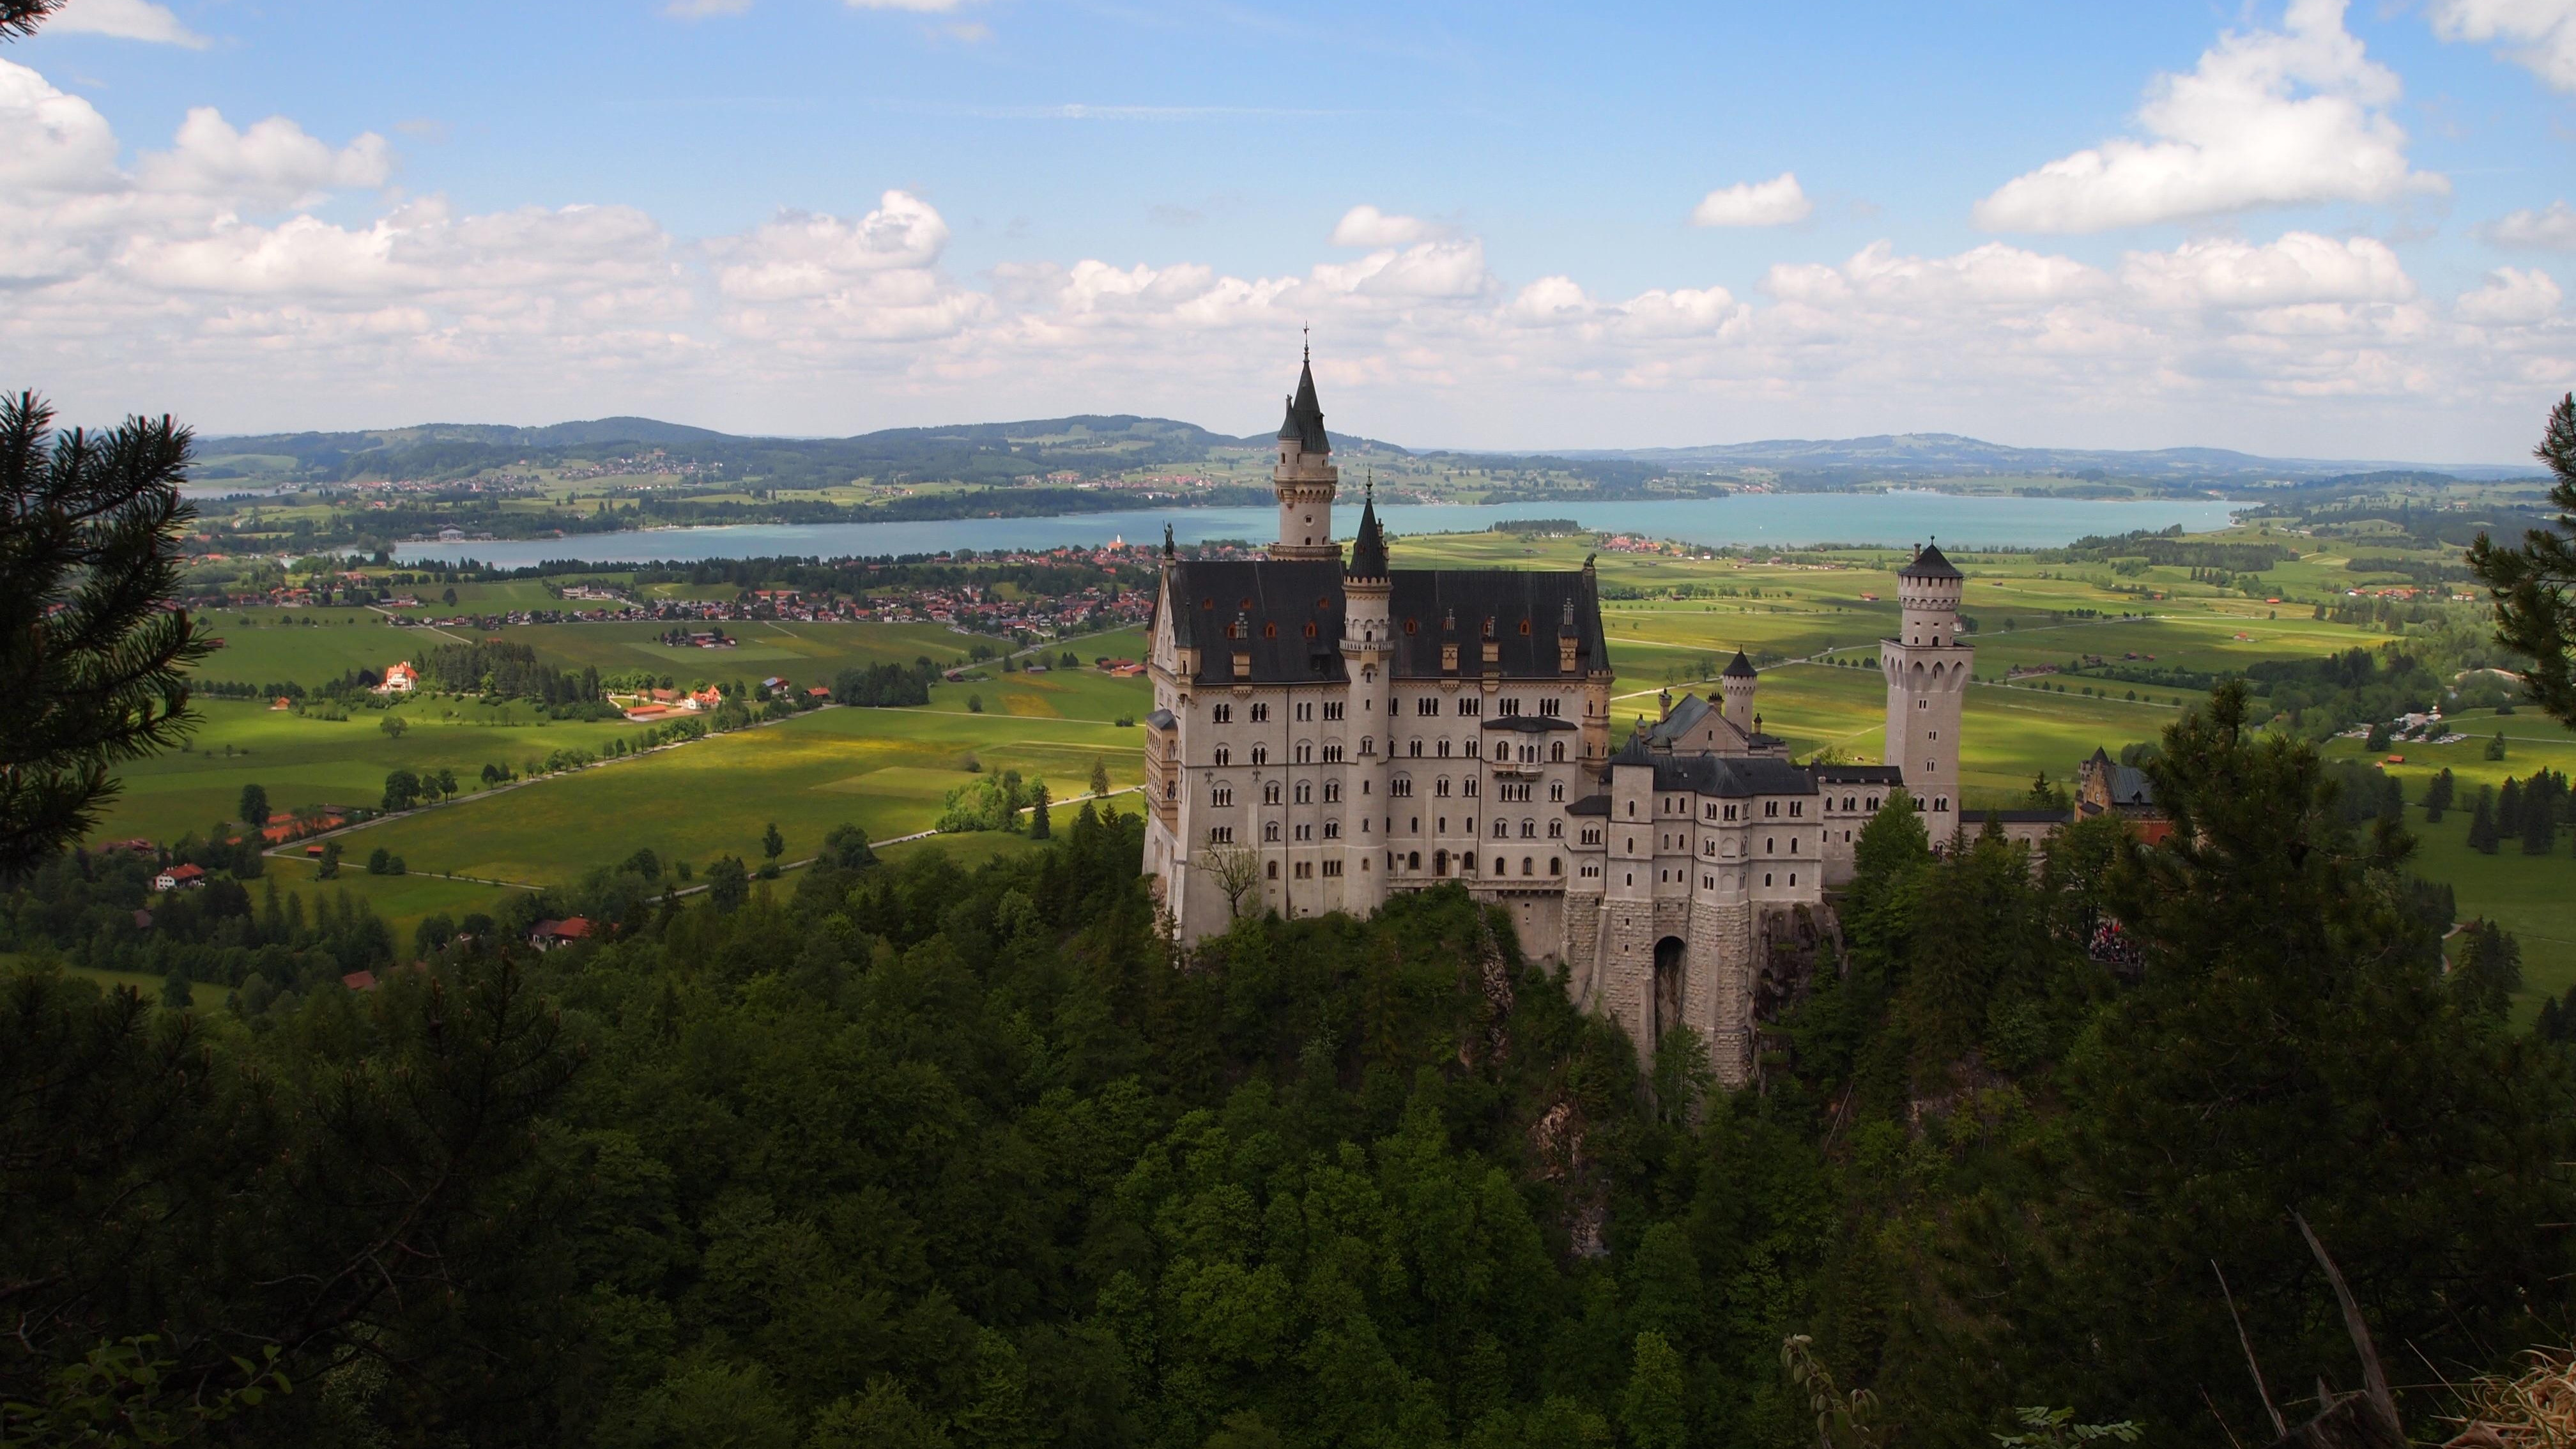 [4032x2268] Bavarian Landscape And Neuschwanstein Castle - Neuschwanstein Castle , HD Wallpaper & Backgrounds